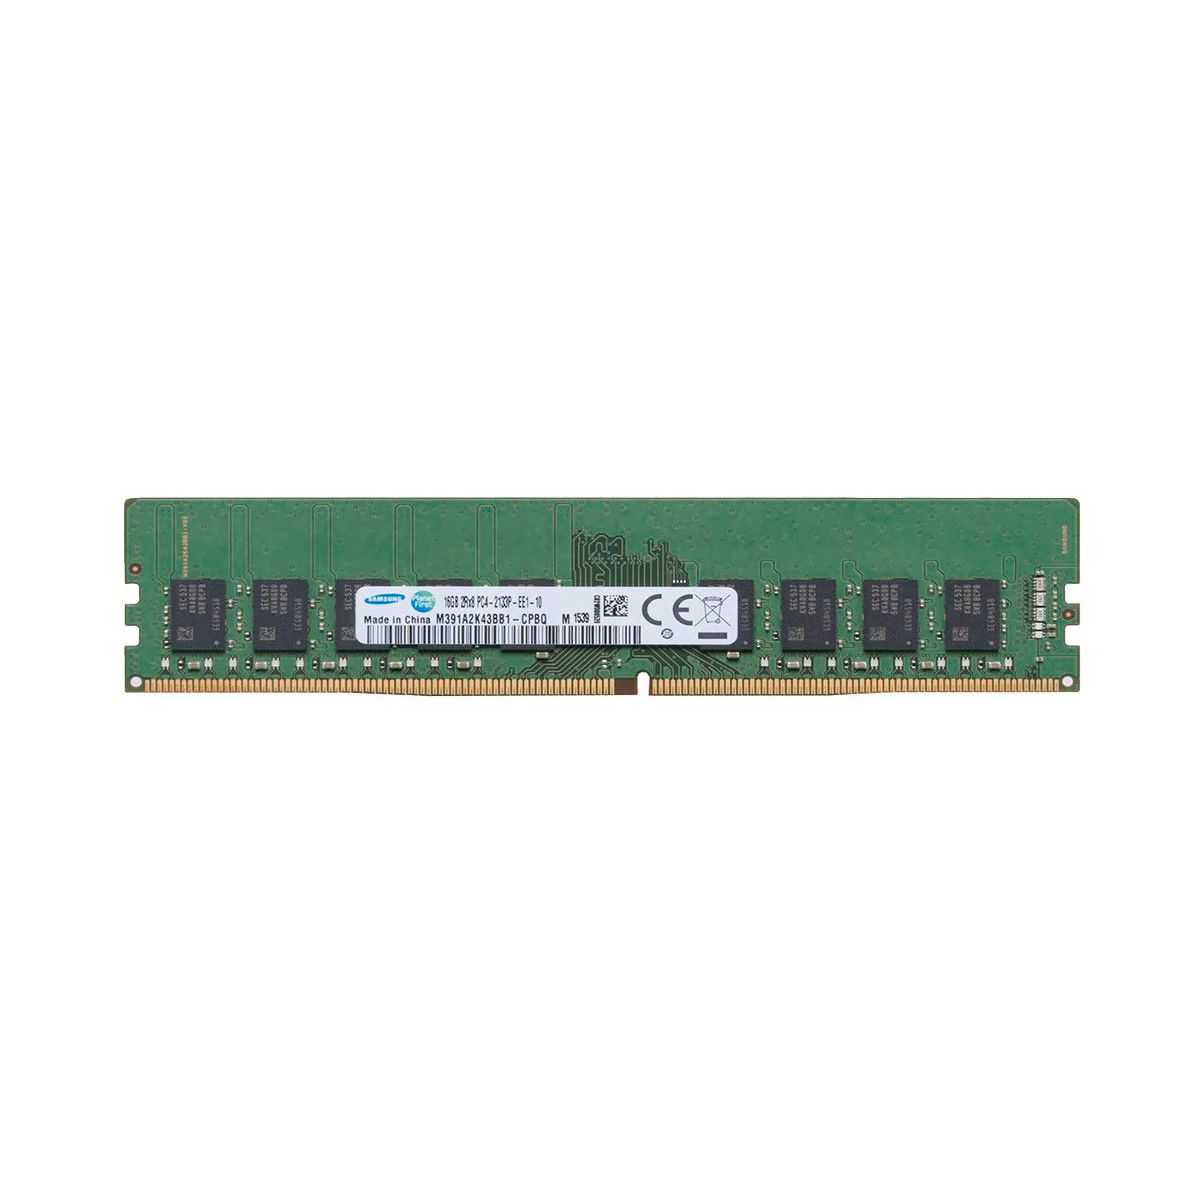 46W0816-MS - Memstar 1x 16GB DDR4-2133 ECC UDIMM PC4-17000P-E